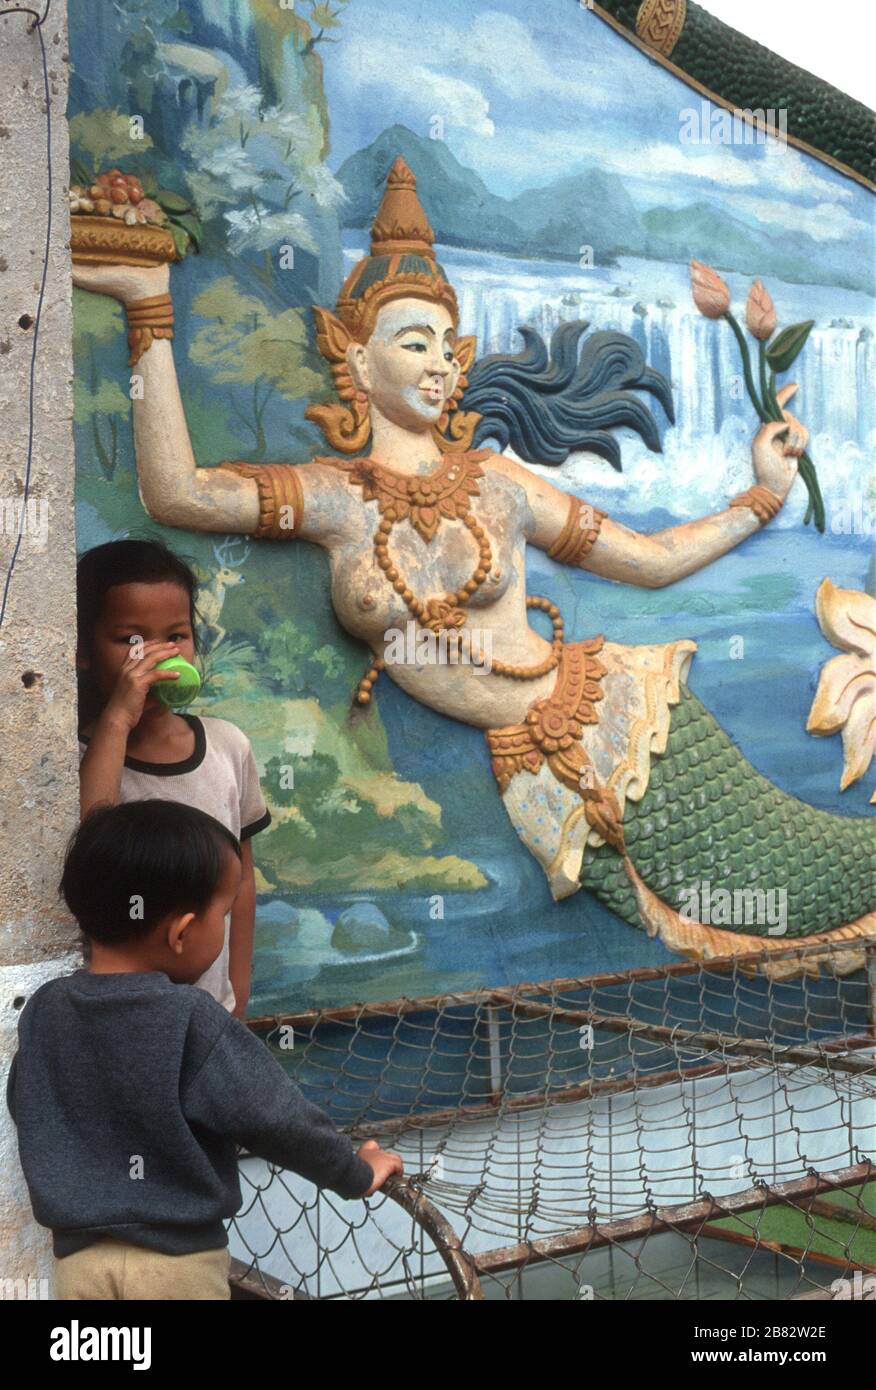 Zwei junge Lao-Jungen ruhen und einer genießt ein Getränk neben einem Wandbild einer Meerjungfrau in Pha that Luang (The Great Stupa) in Vientiane, Laos. Sie hält lotosblüten und eine Schüssel/einen Obstkorb. Sie trägt eine traditionelle Kopfbeere und eine Kette von Perlen. Das Bild zeigt Berge, einen Fluss und einen Wasserfall im Hintergrund. Stockfoto